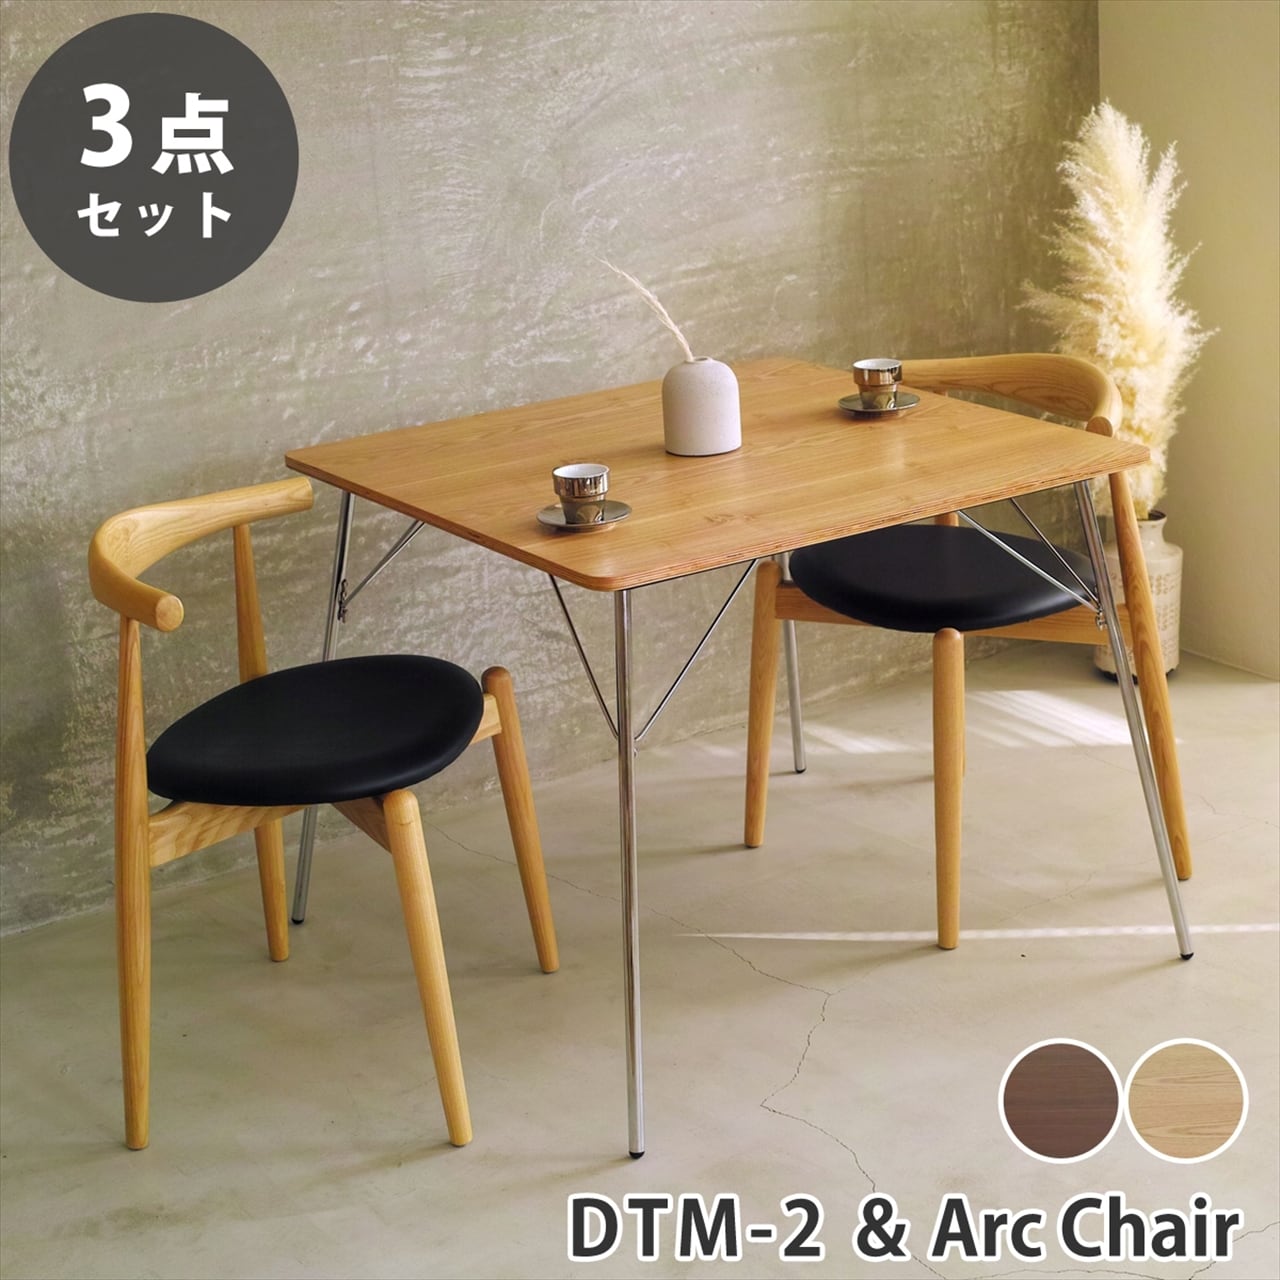 籐製の椅子とテーブルの三点セットの内の椅子1